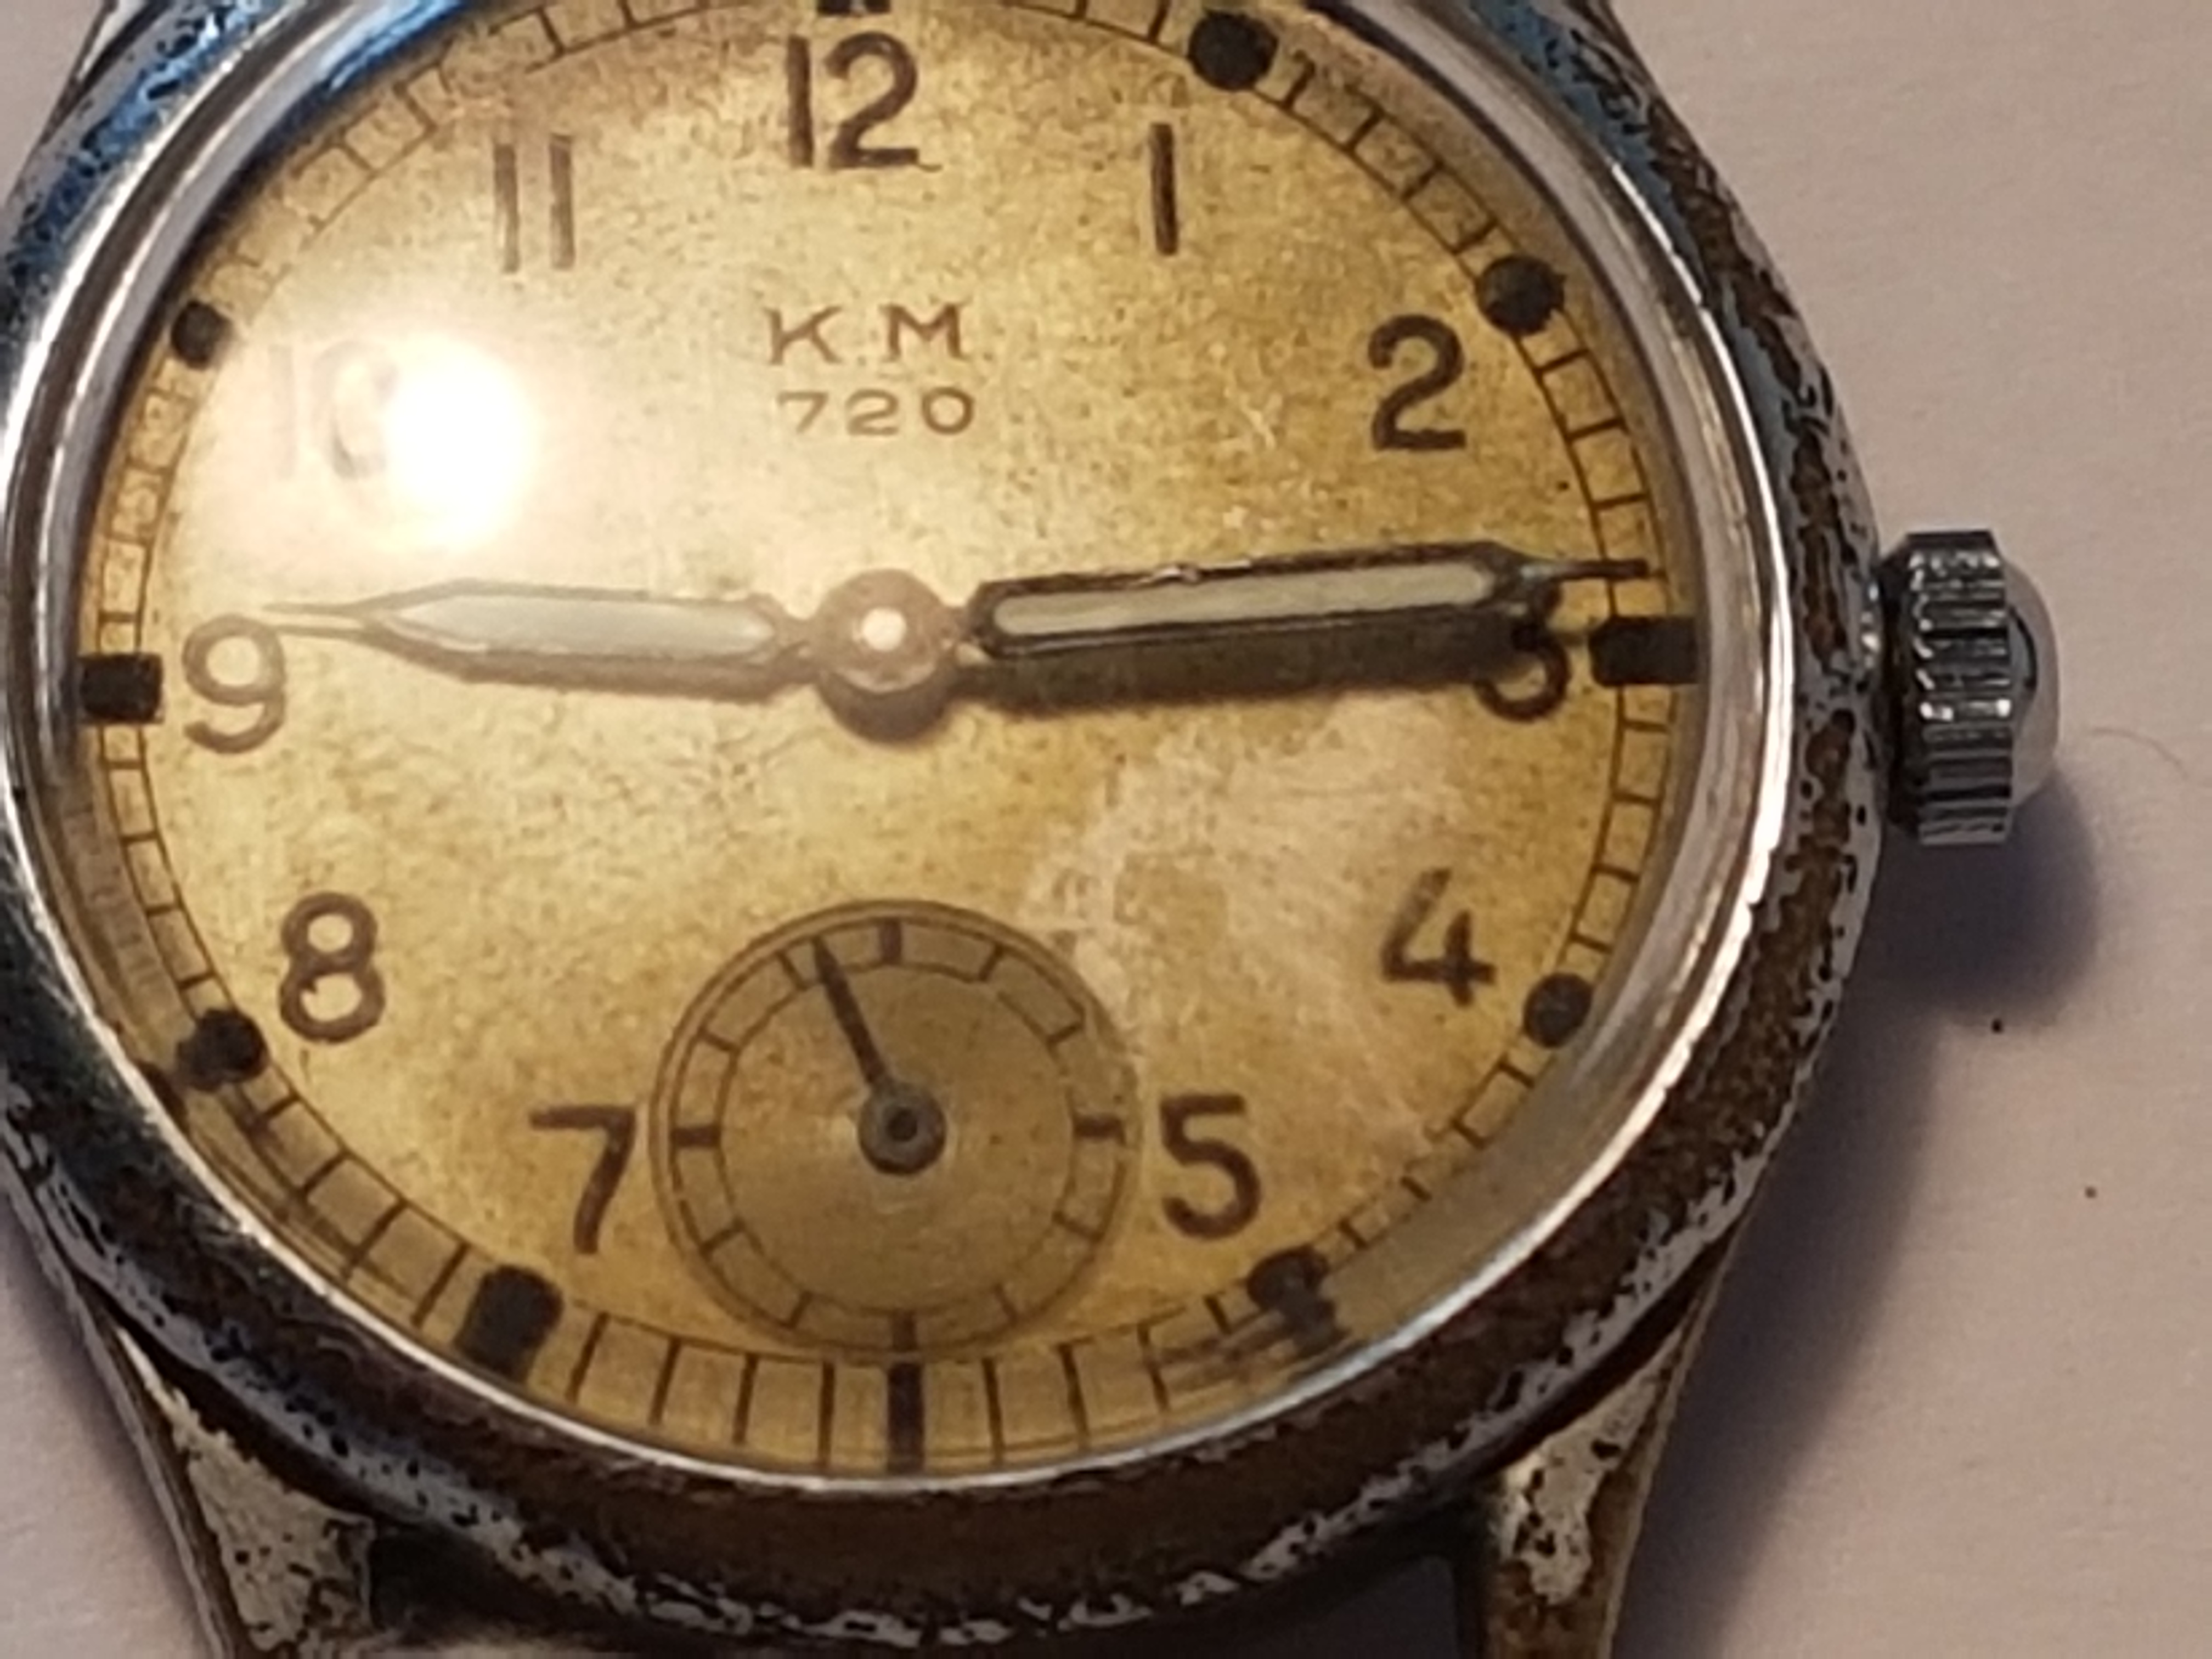 Ww2 German Kreigmarine Mans Watch, 720 Movement In Good Condition.Orginal